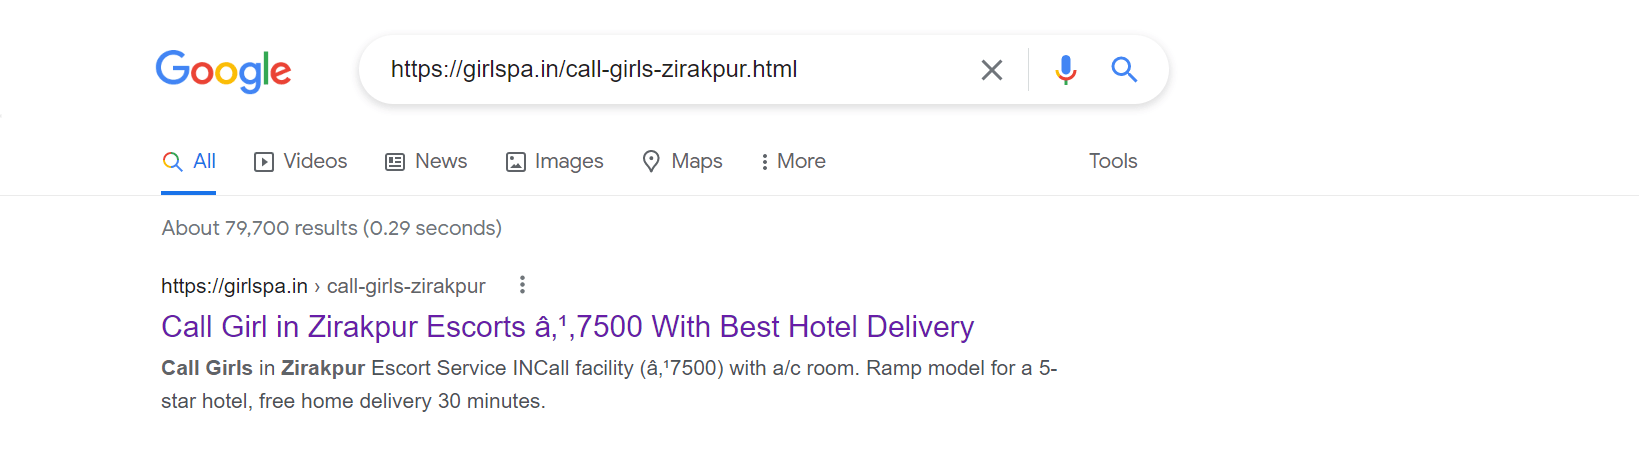 Call Girl In Zirakpur